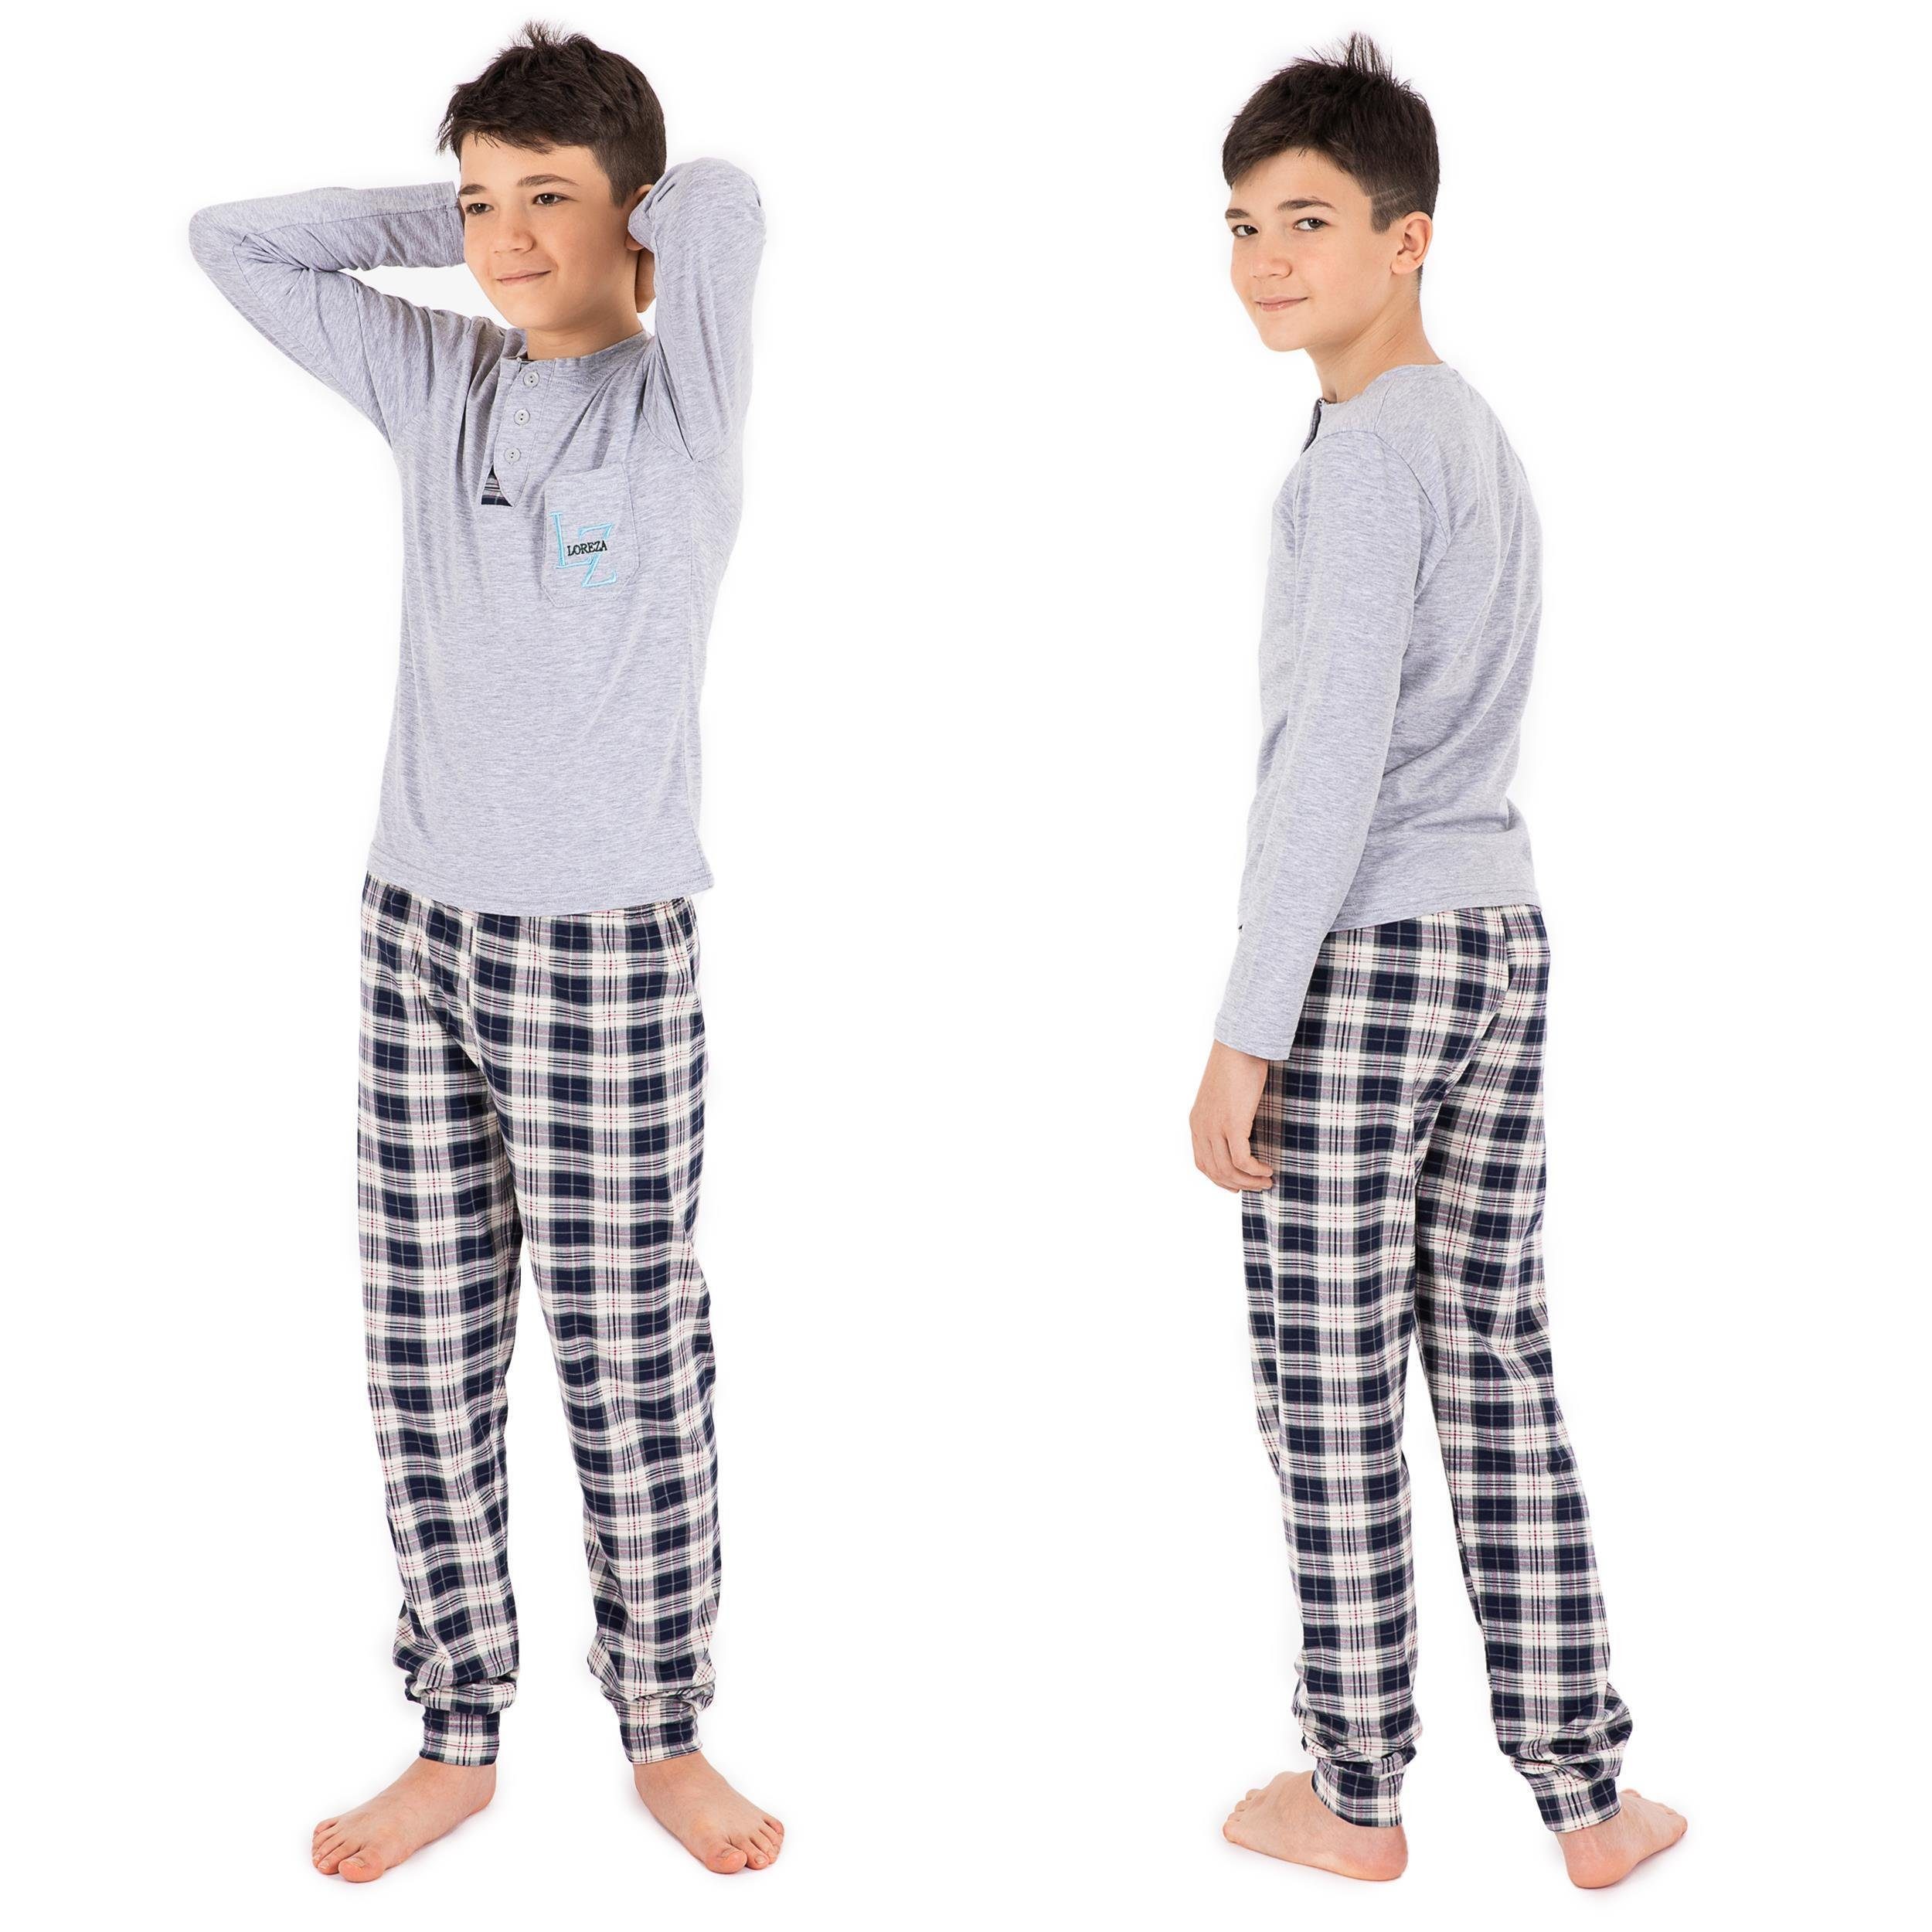 LOREZA Pyjama Jungen Schlafanzug zweiteilig Langarm - Kariert - Mehrfarbig (Set, 2 tlg)